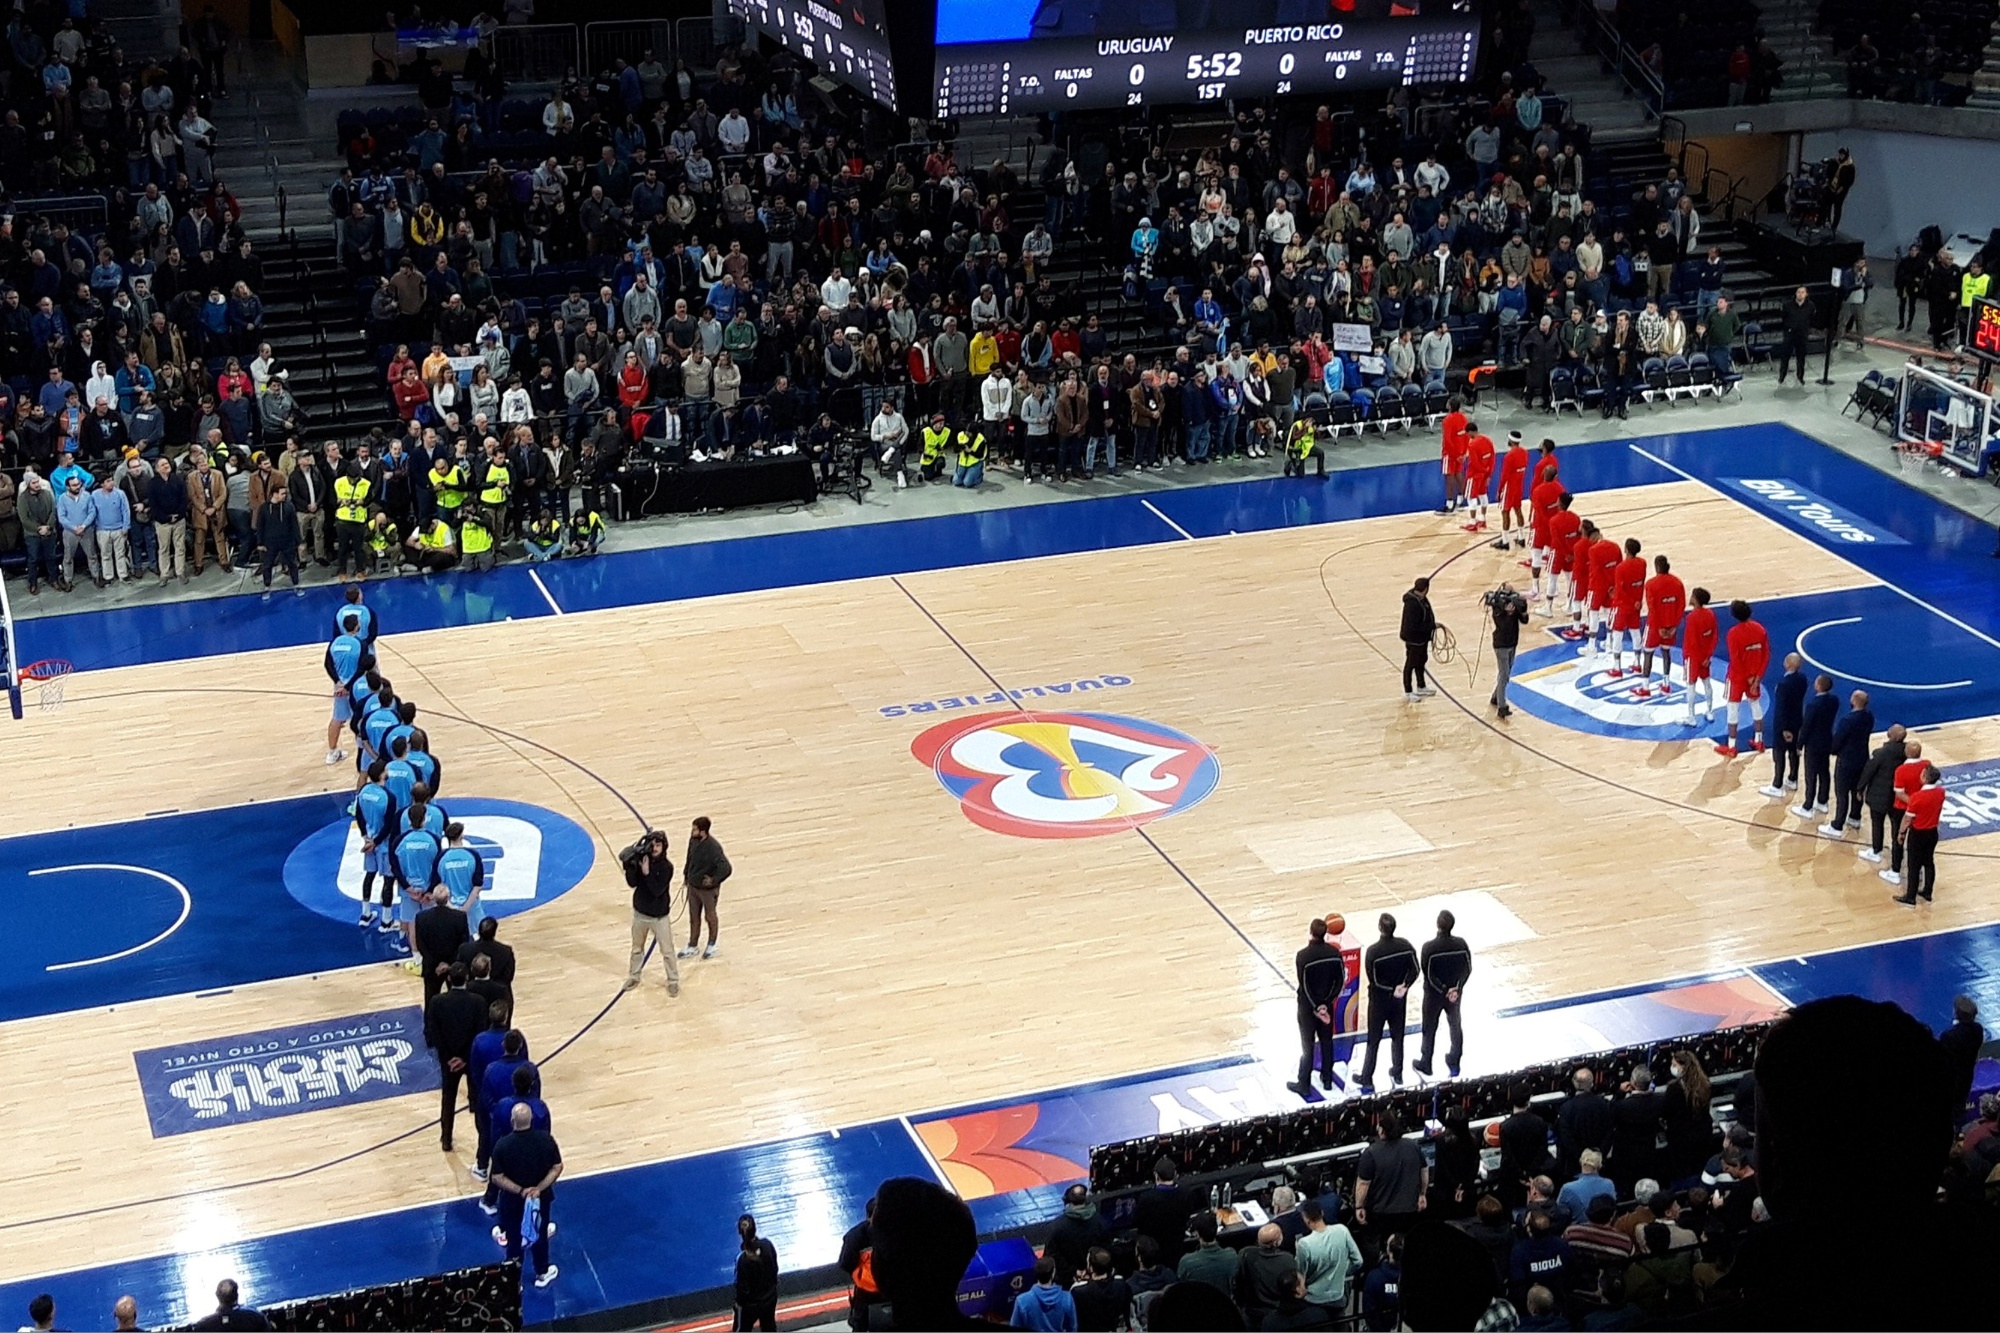 eurobasket watch online free